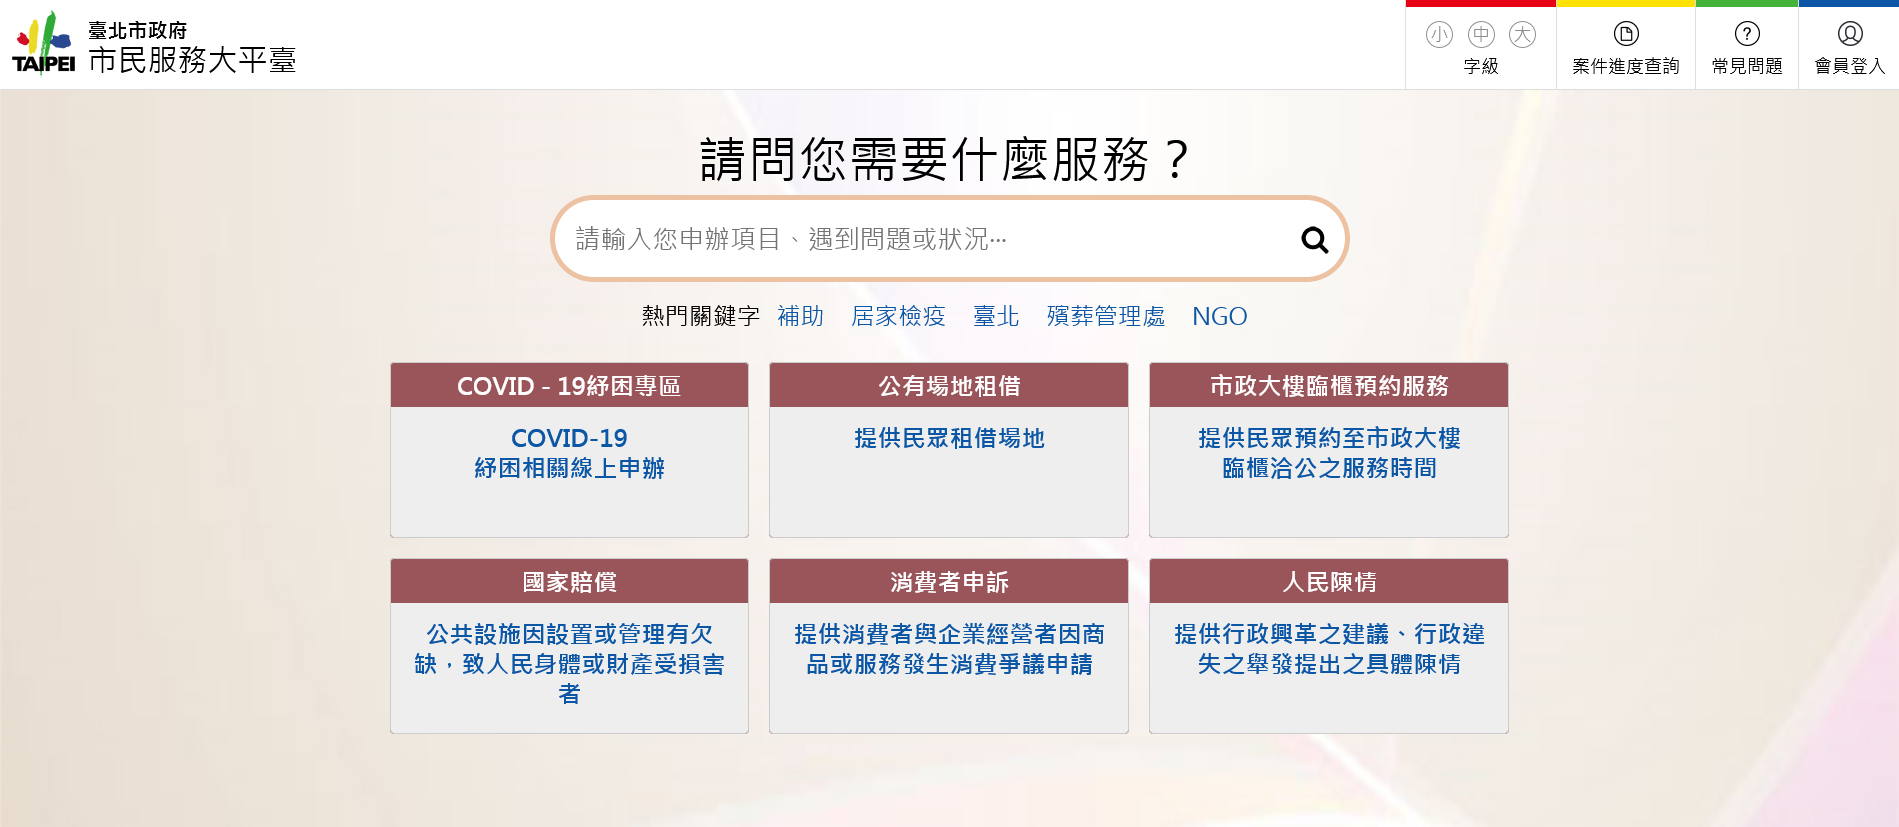 臺北市政府市民服務大平臺網站截圖